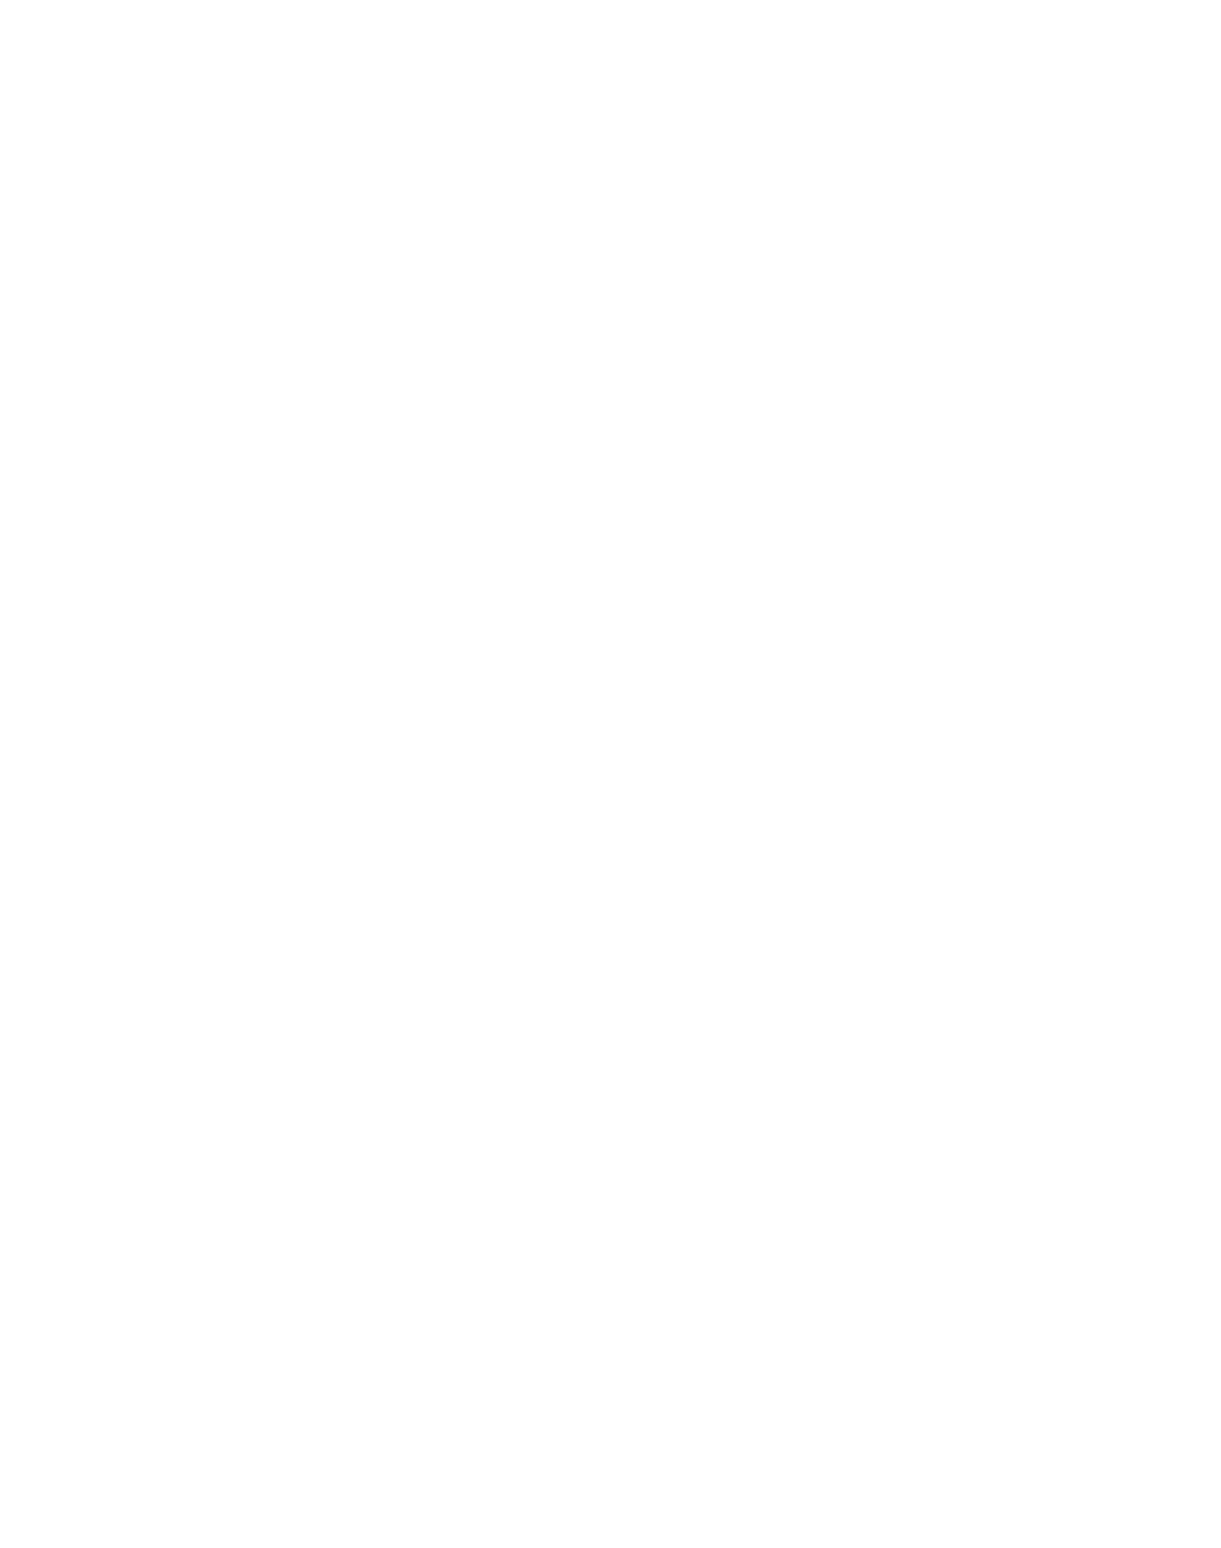 FuRyu logo for dark backgrounds (transparent PNG)